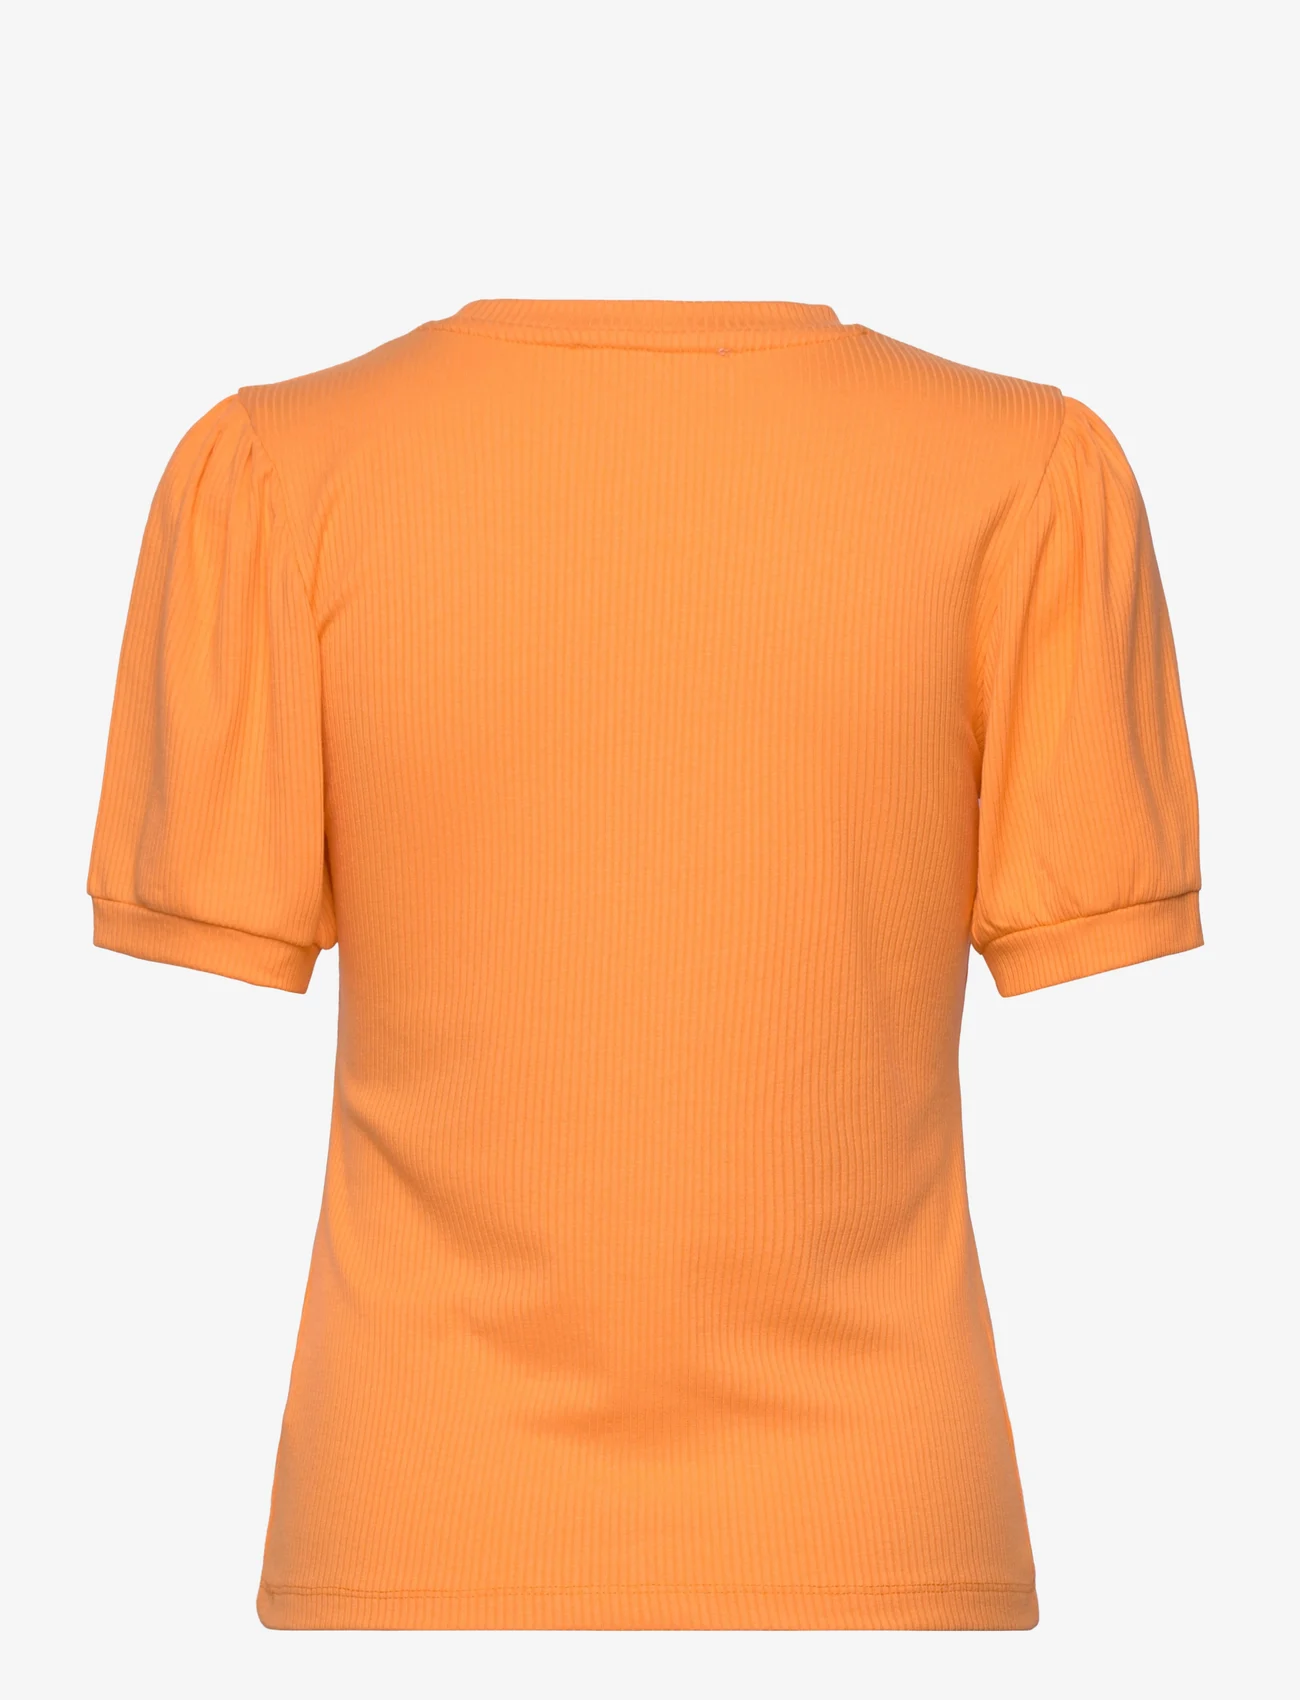 Minus - Johanna T-shirt - lowest prices - orange peel - 1